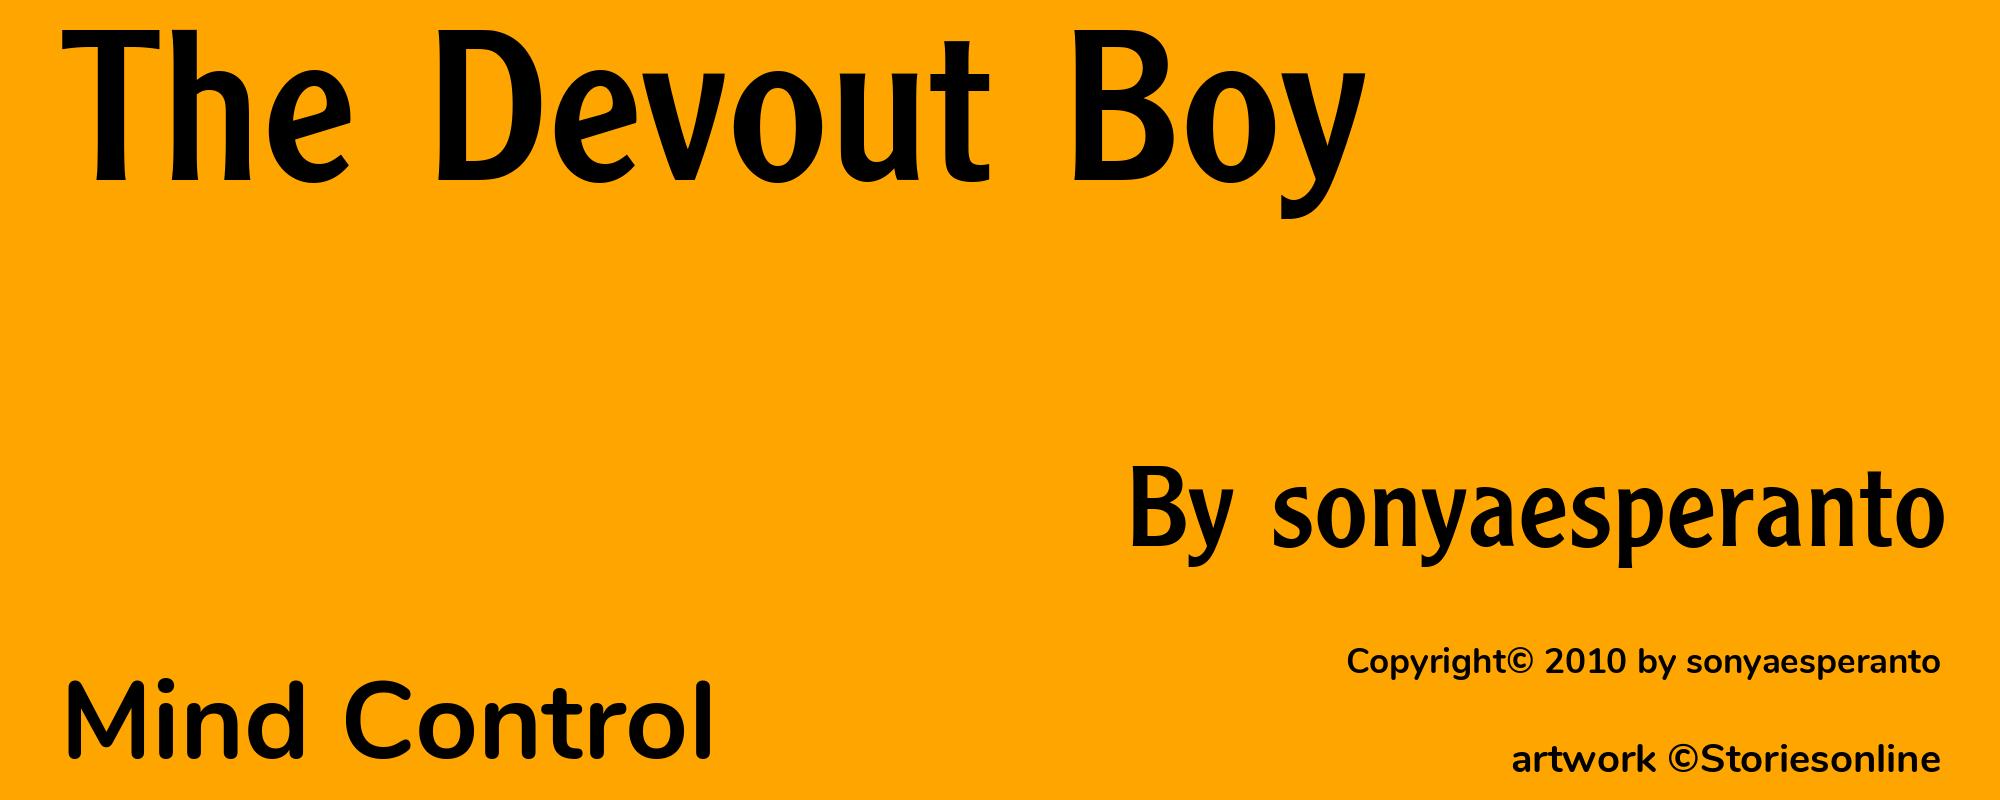 The Devout Boy - Cover